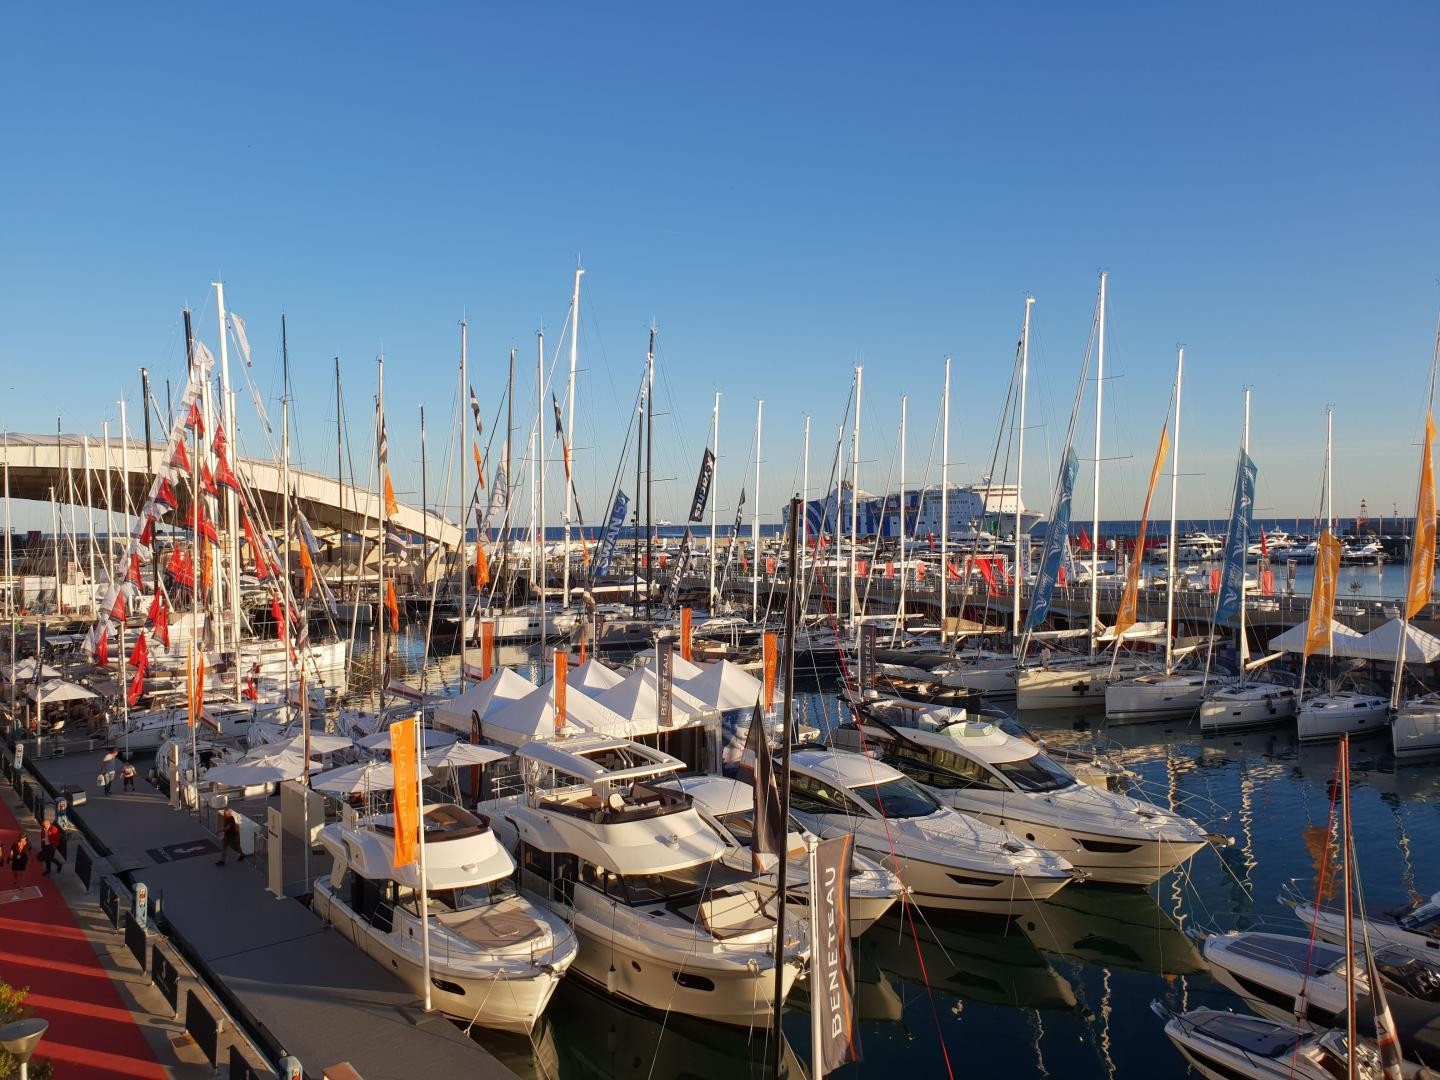 La darsena vela al Salone Nautico di Genova 2018
ph. G.Luzzatto©